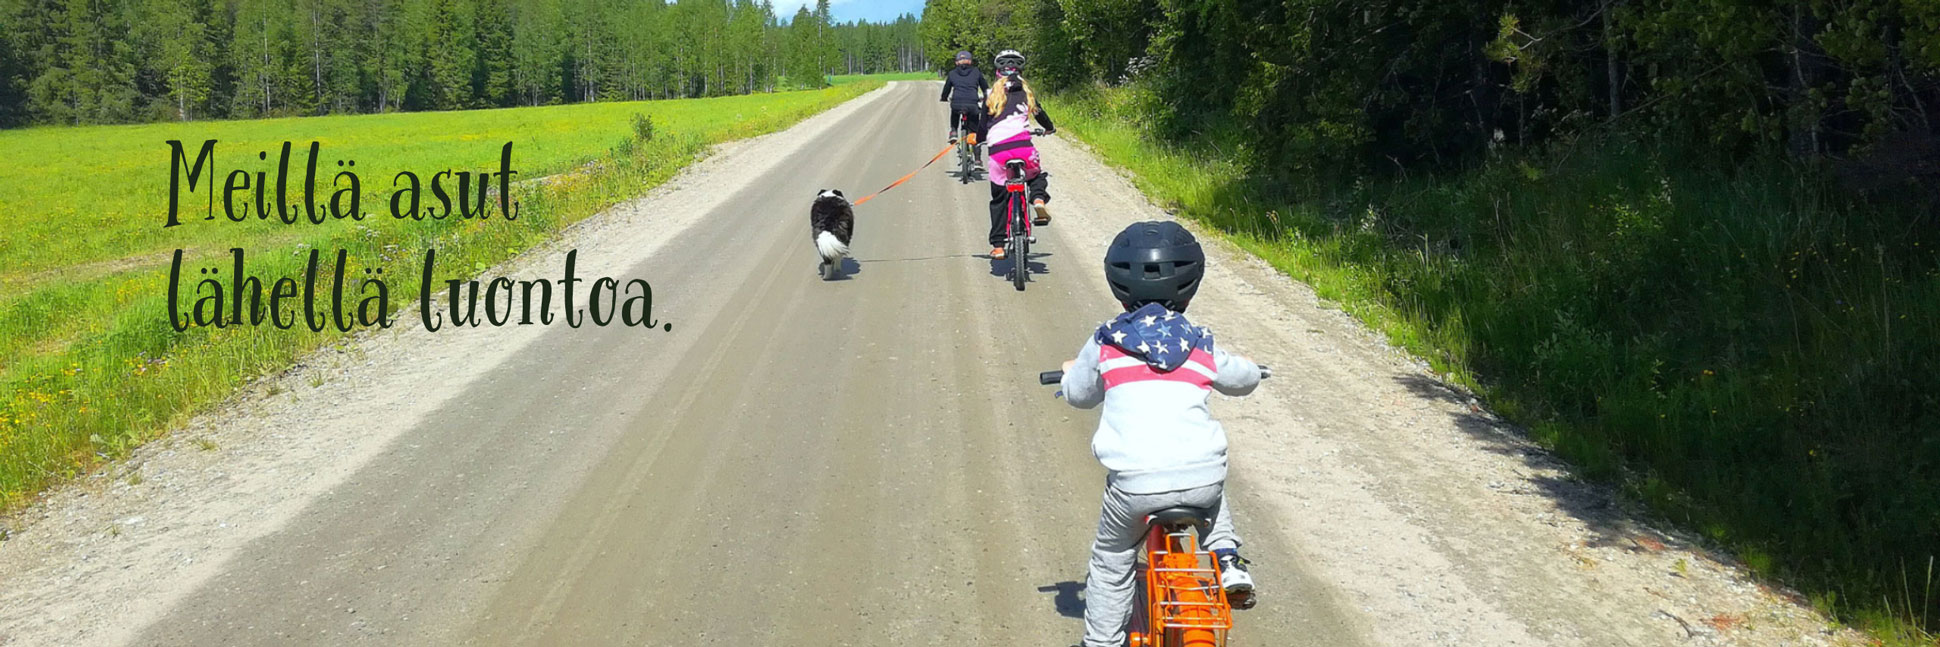 Muuttajalle suunnatun sivun pääkuvassa perhe polkupyöräilee maaseuturaitilla. Kuvaaja: Sanna Kotilainen